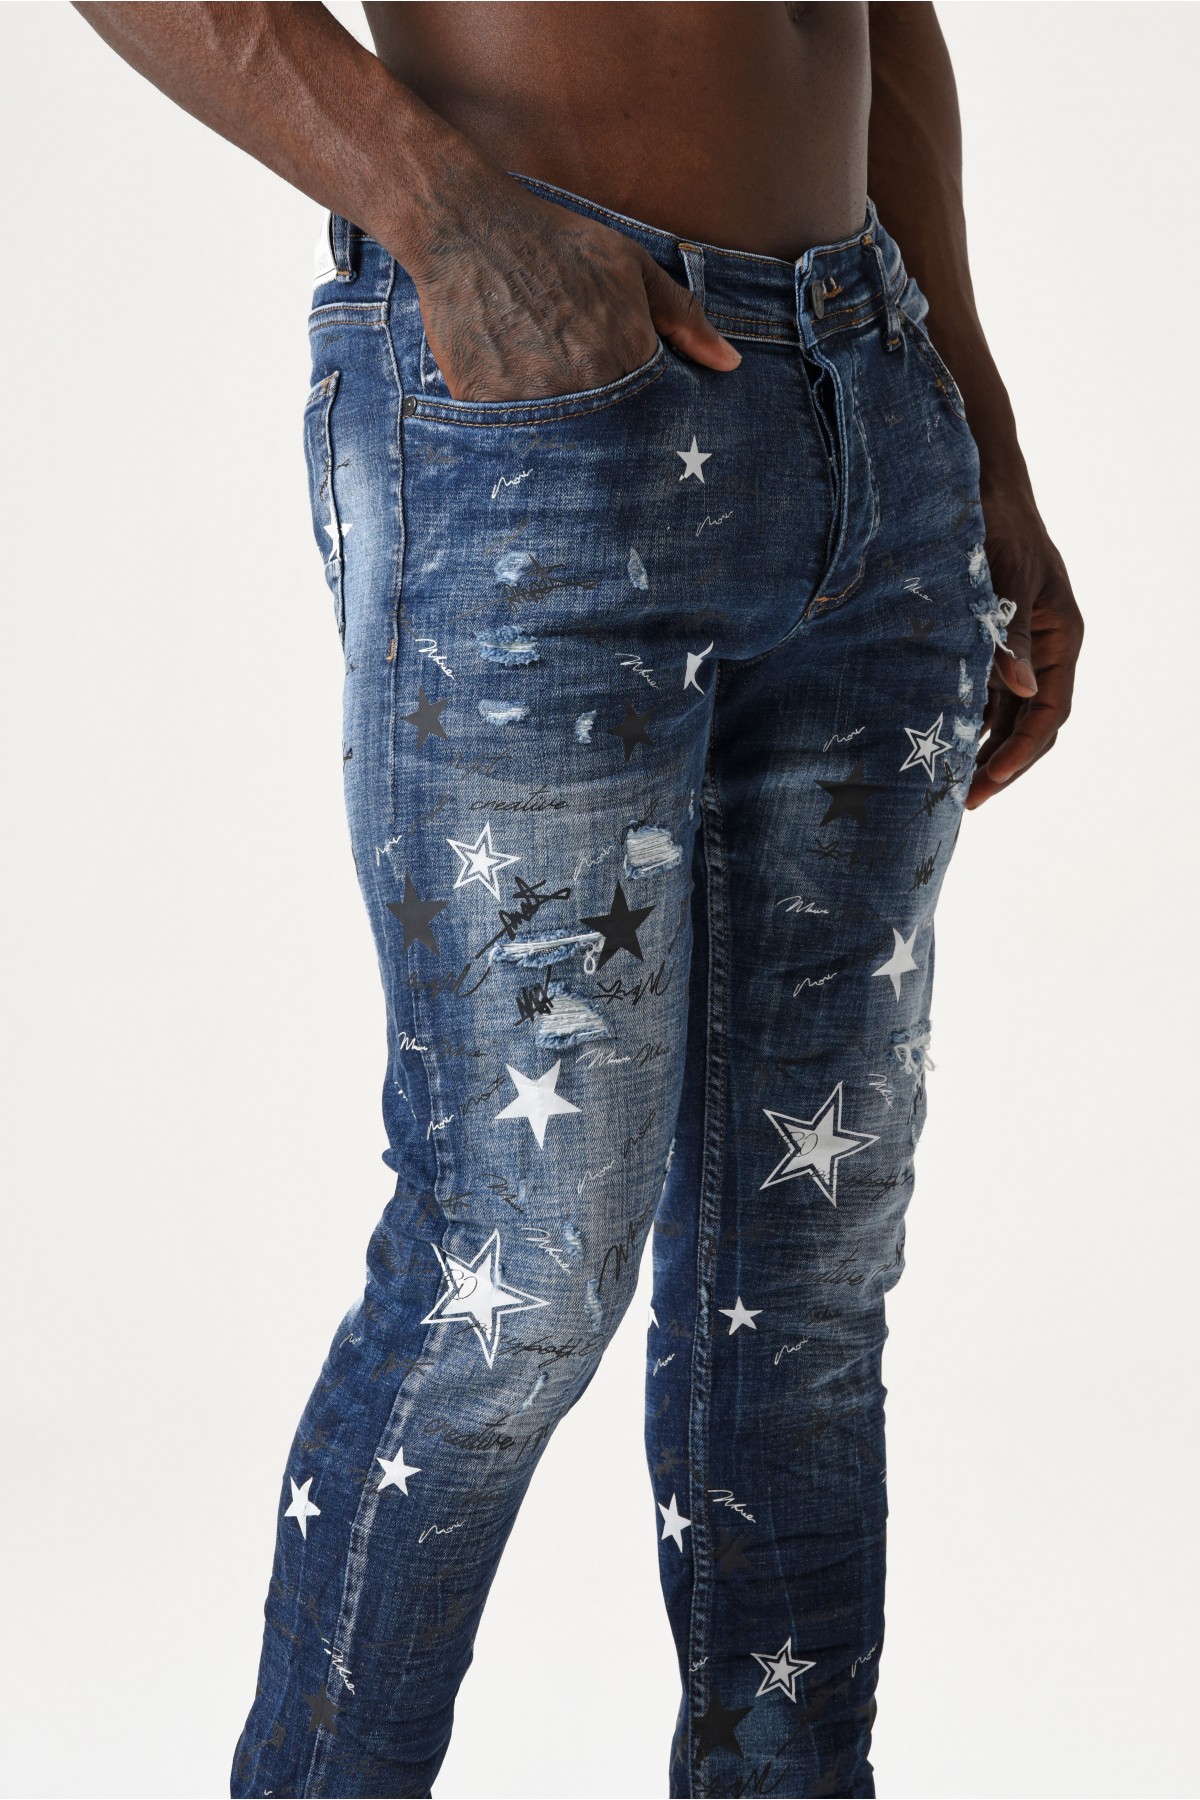 Erkek Denim Pantolon - Yıldız Baskı desenli -  Koyu Mavi